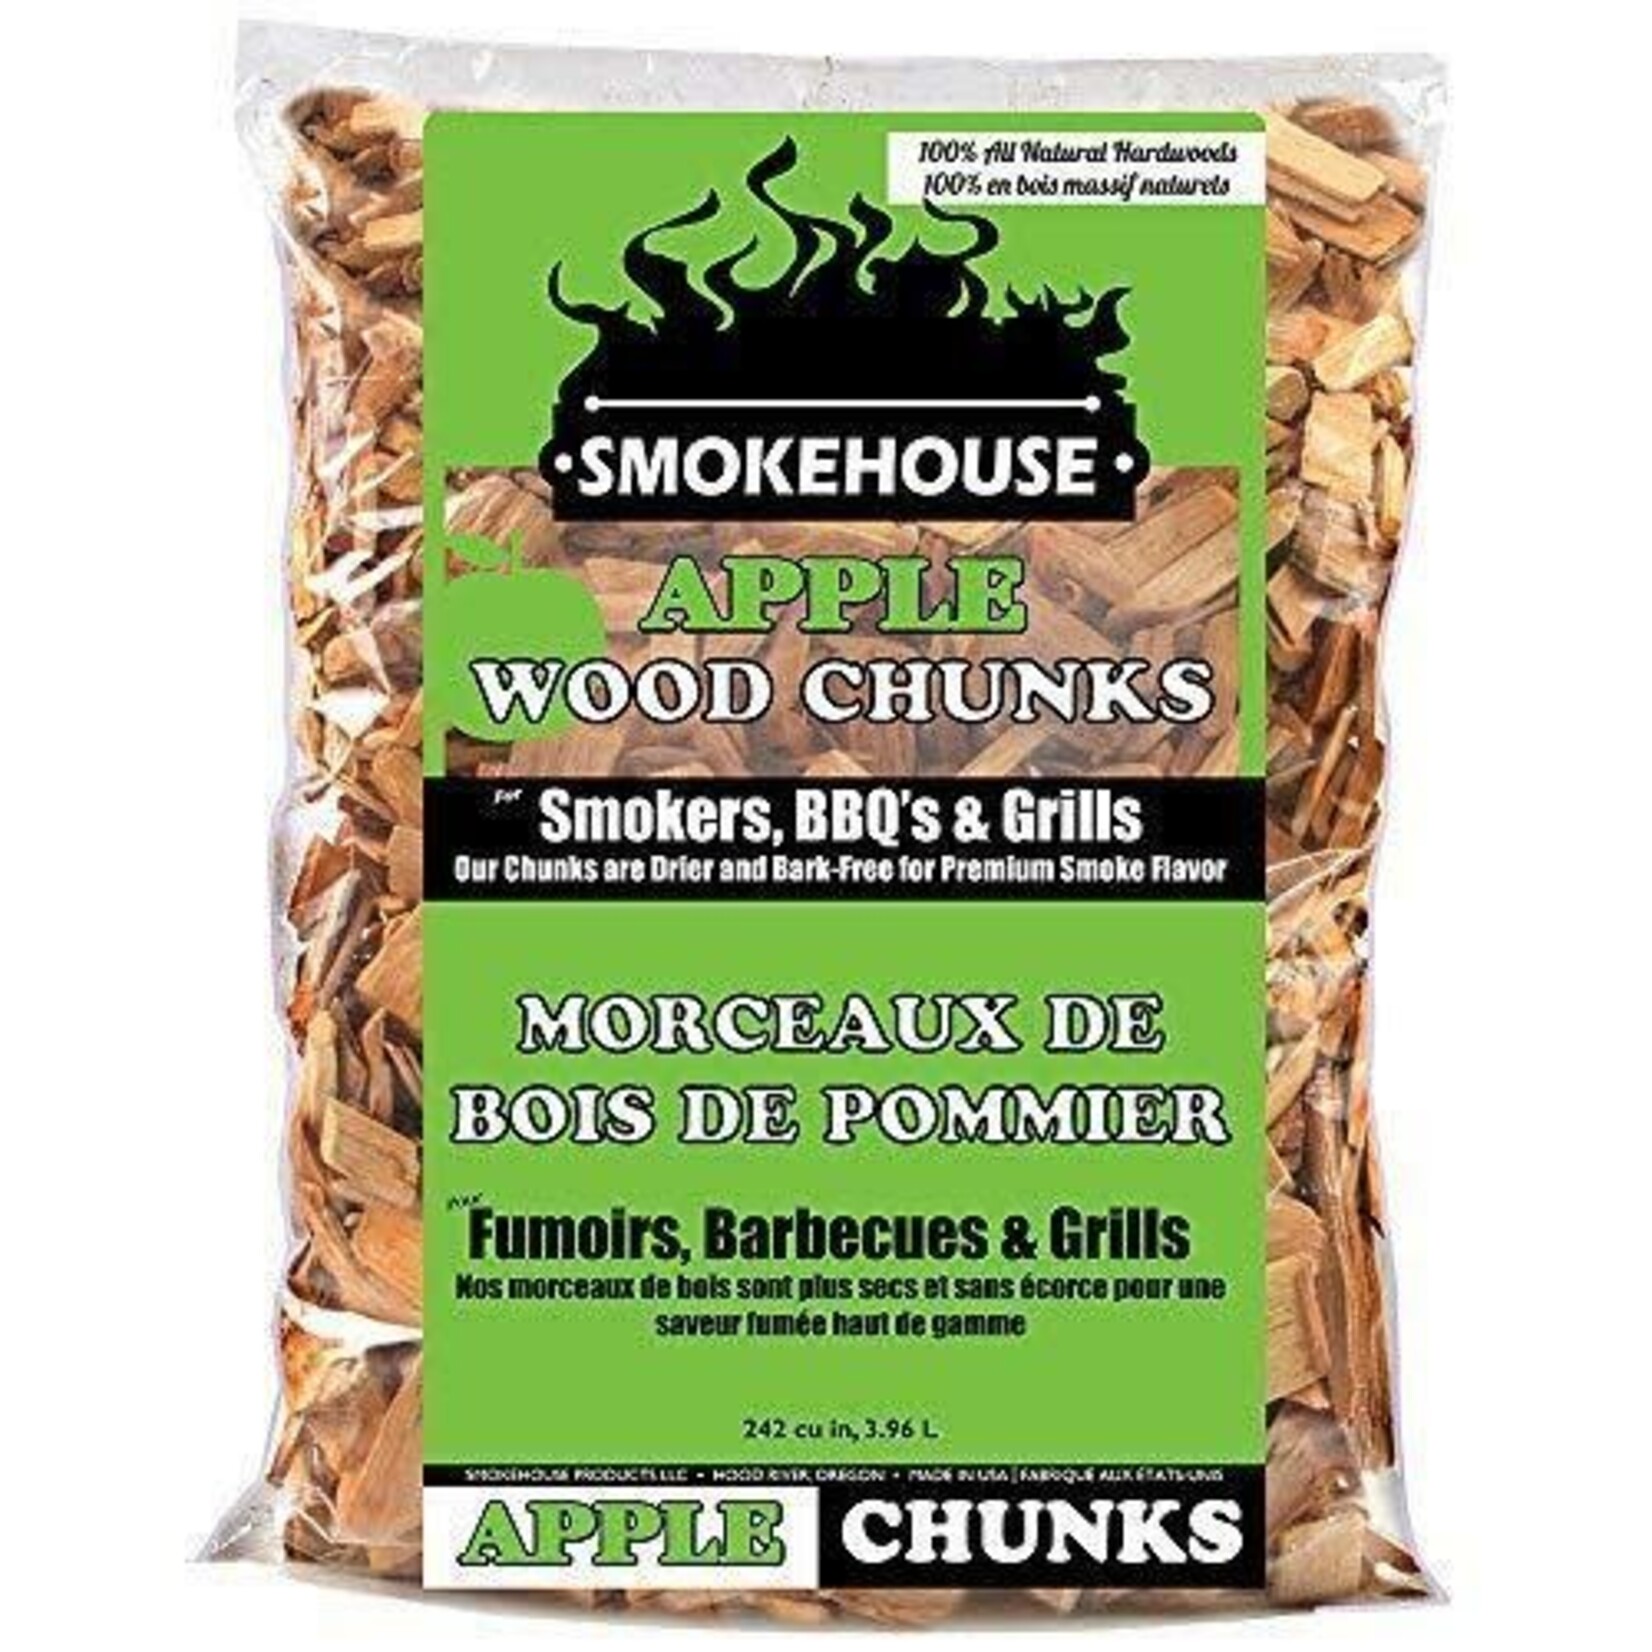 Morceaux De Bois De Pommier Smokehouse Pour Fumoirs, Barbecue & Grills 3.96L